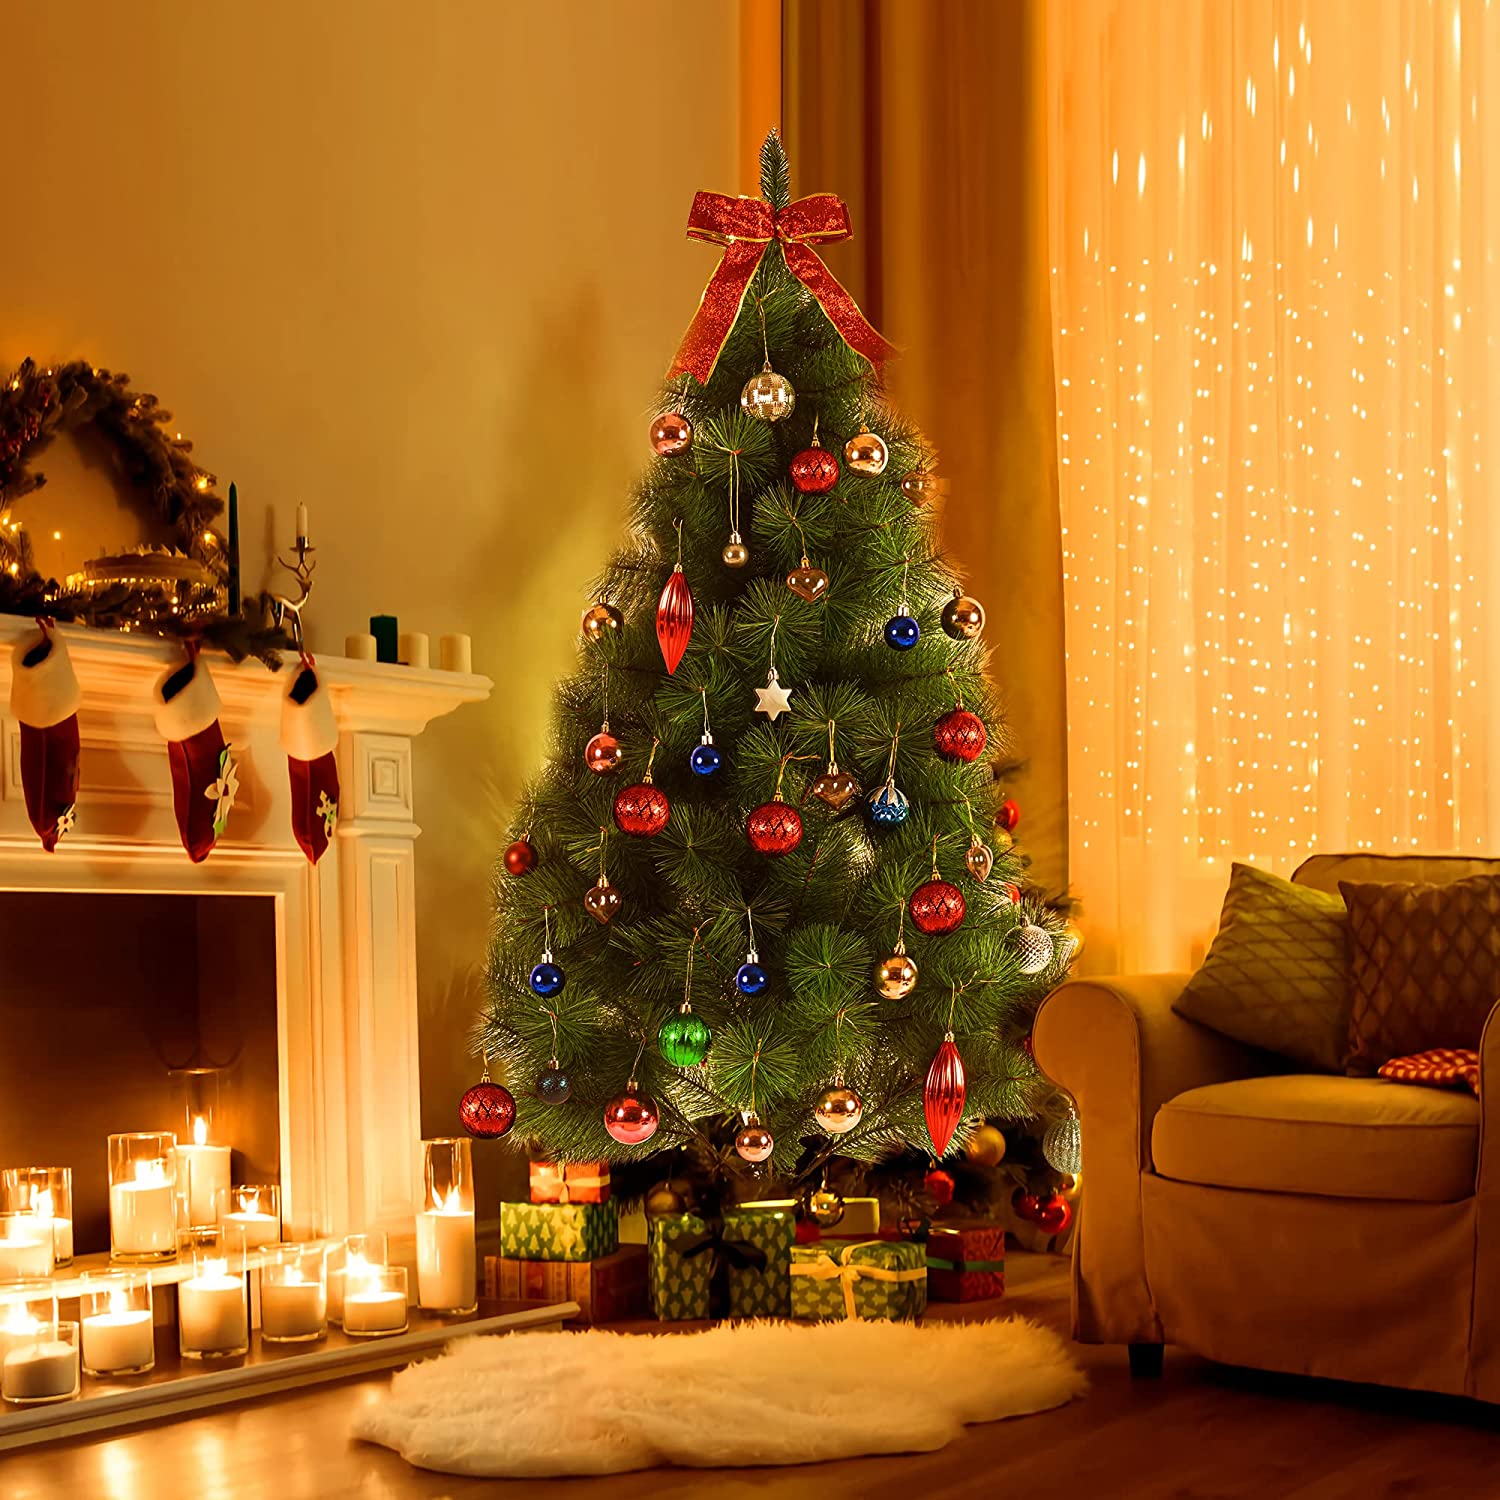 クリスマスツリー 枝大幅増量タイプ 赤い実付き、おしゃれな ポリ成型葉混合クリスマスツリー 210CM KSBMA - 2